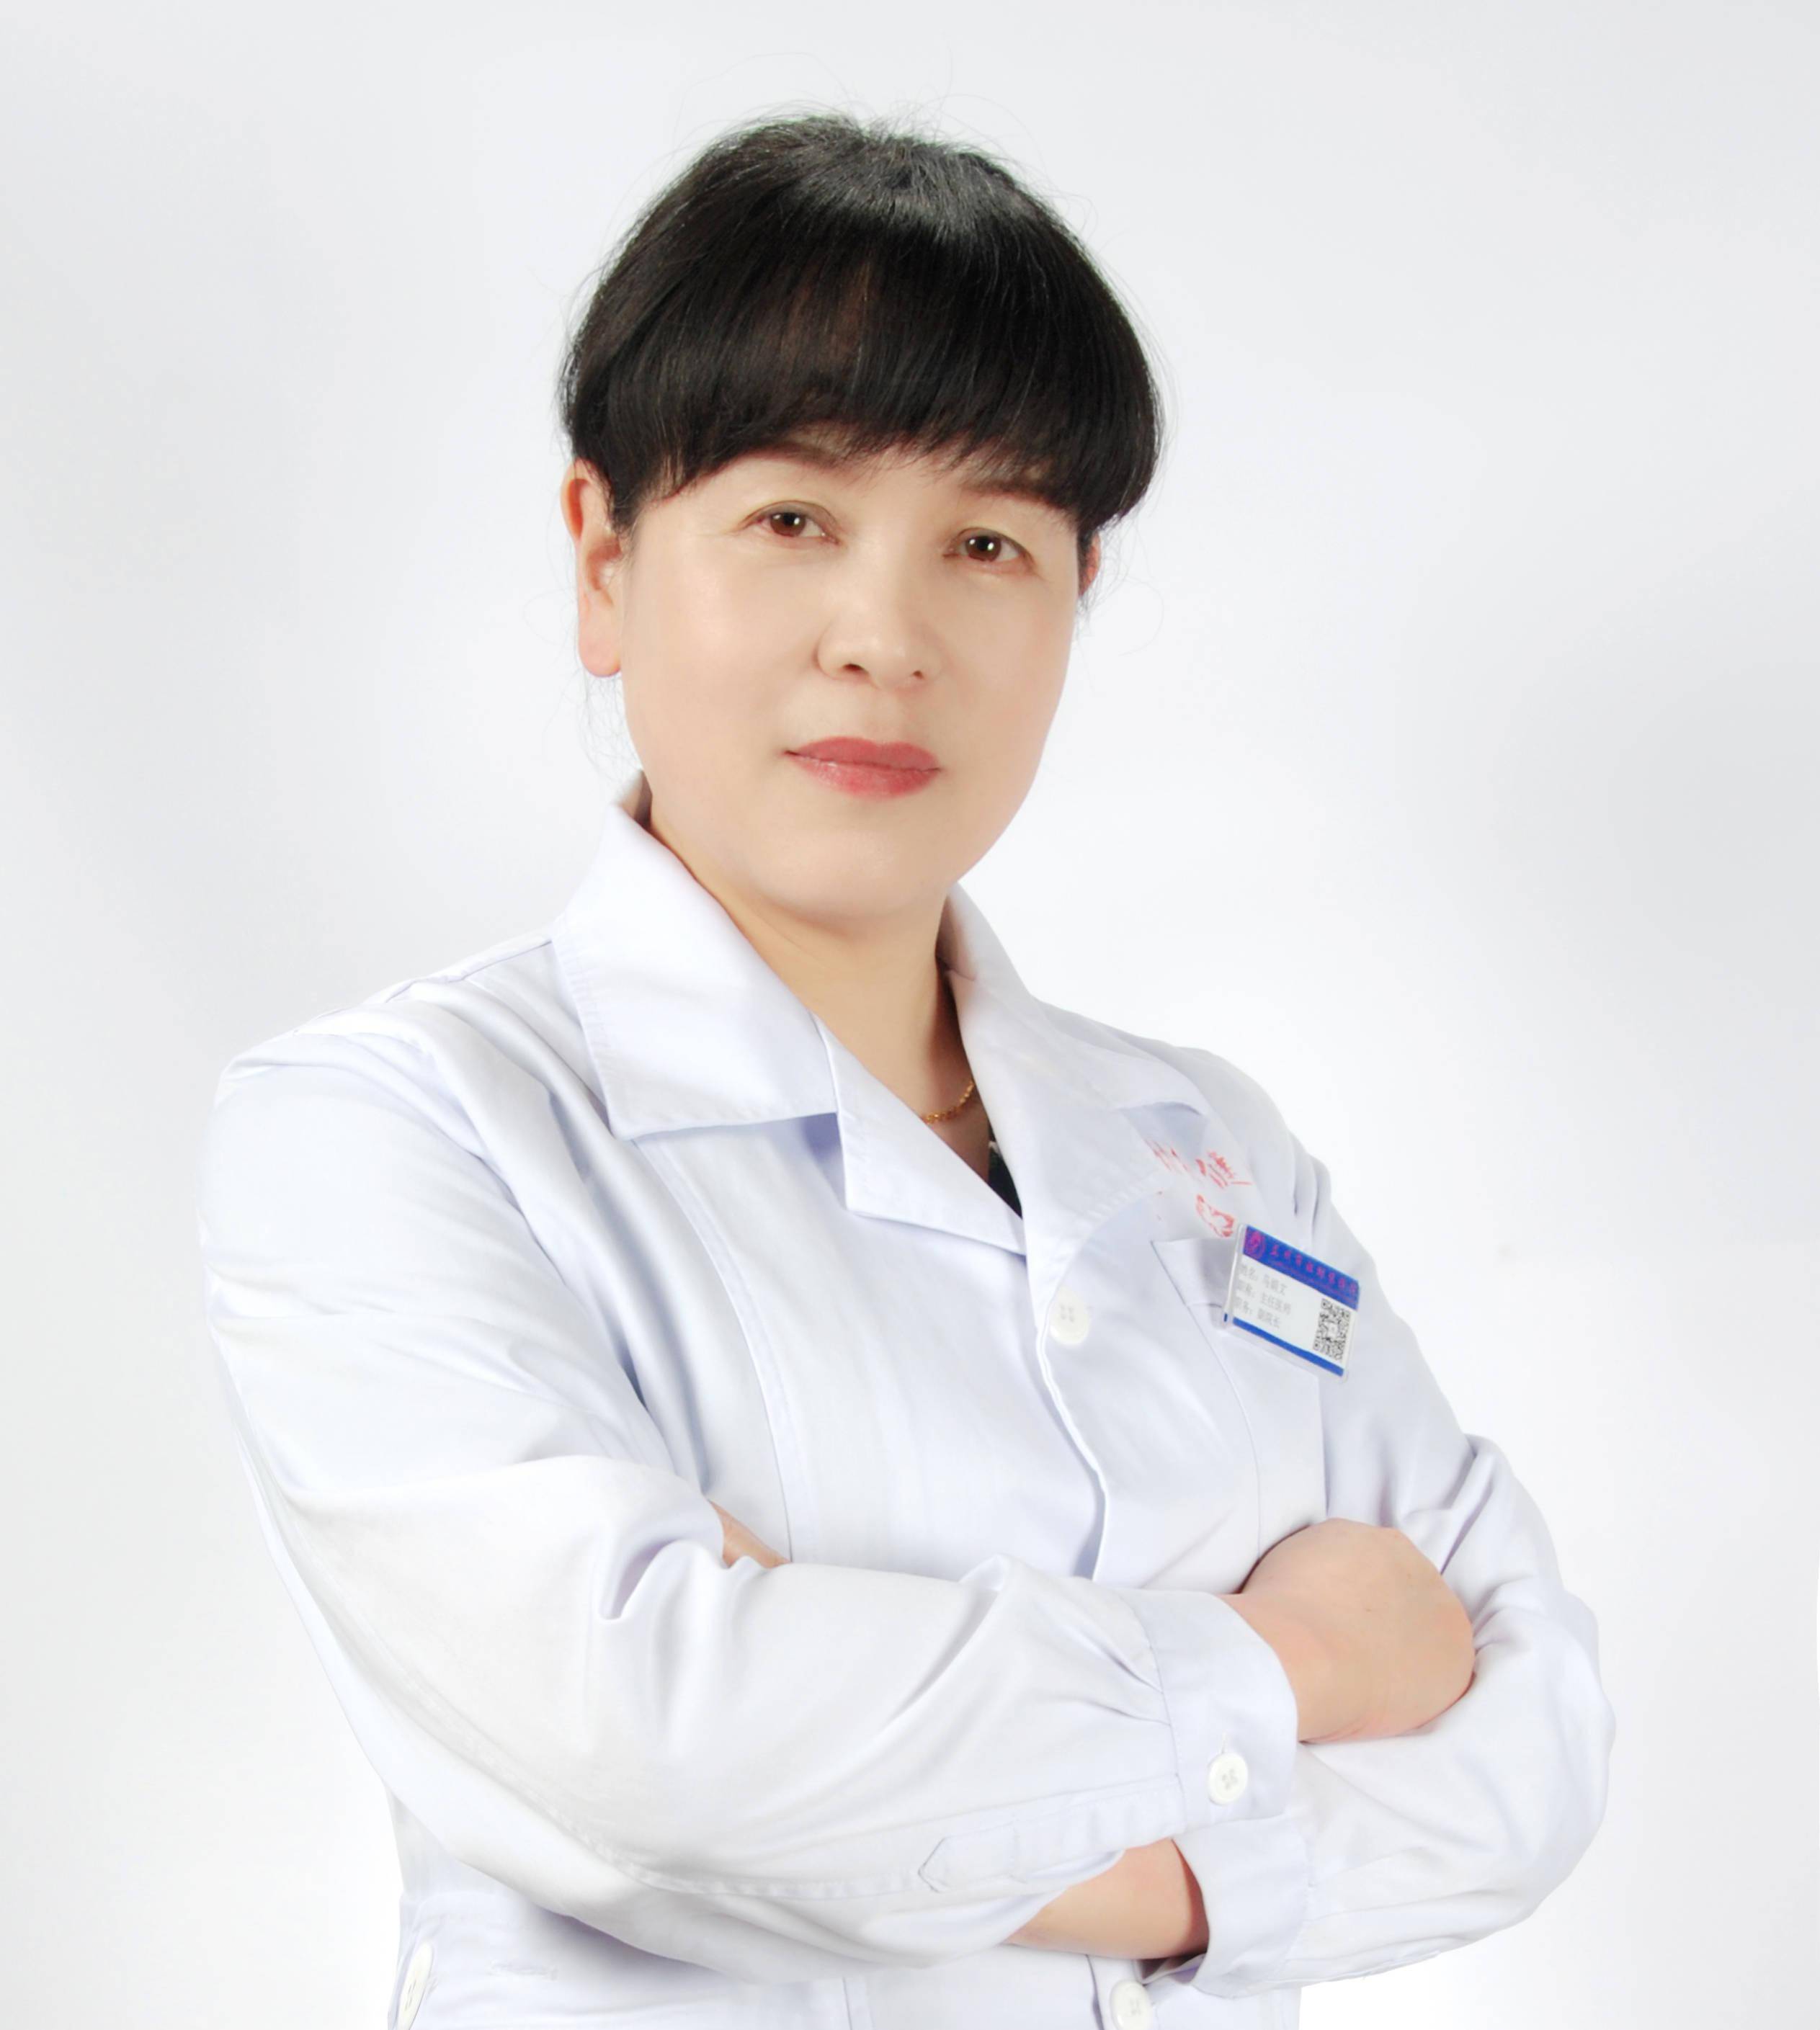 中国现代著名女医生图片